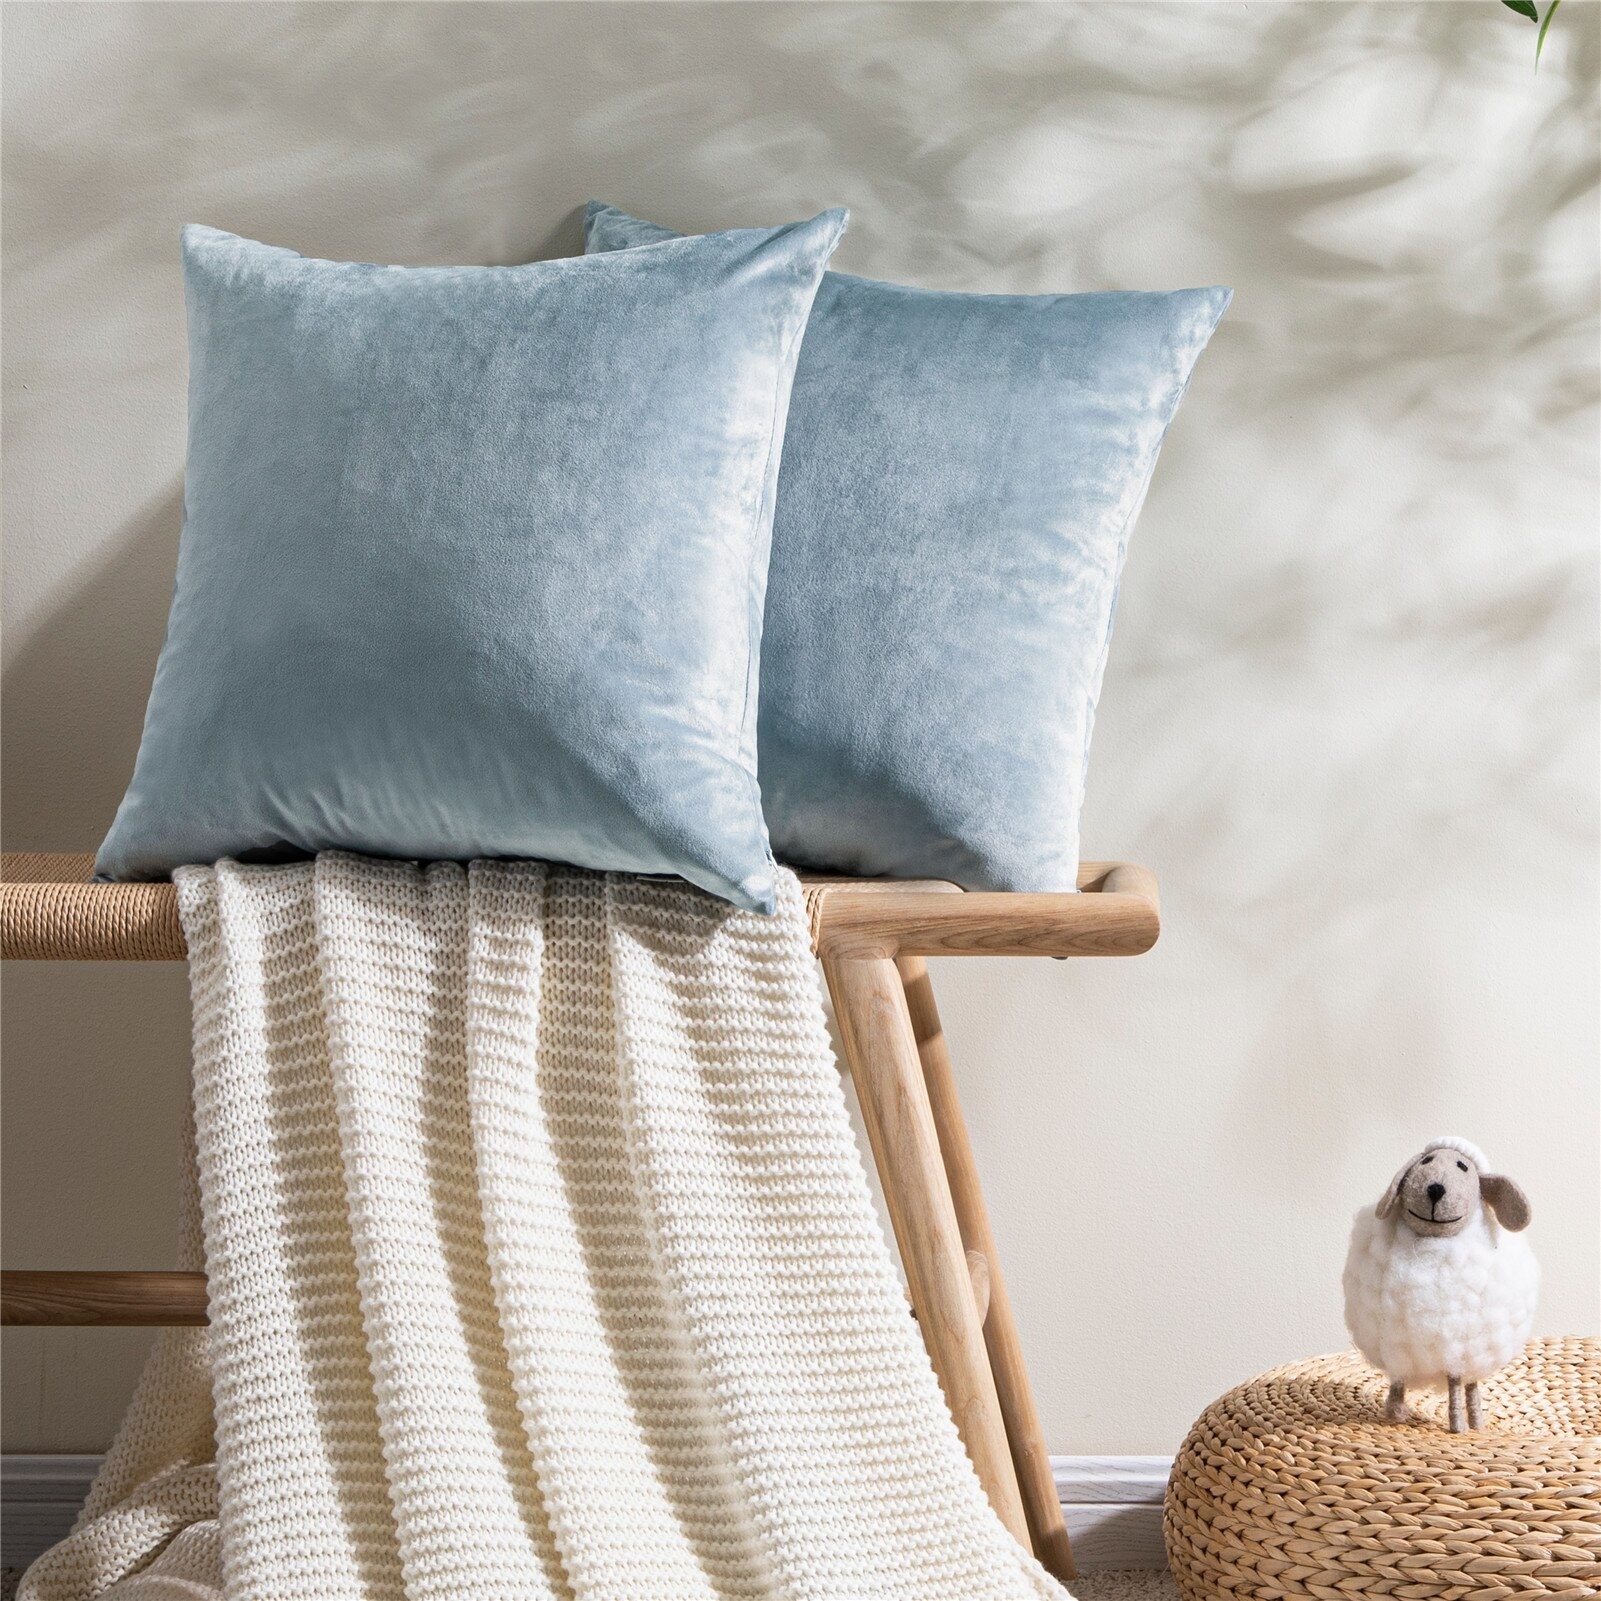 The two pillow velvet pillow covers in light blue